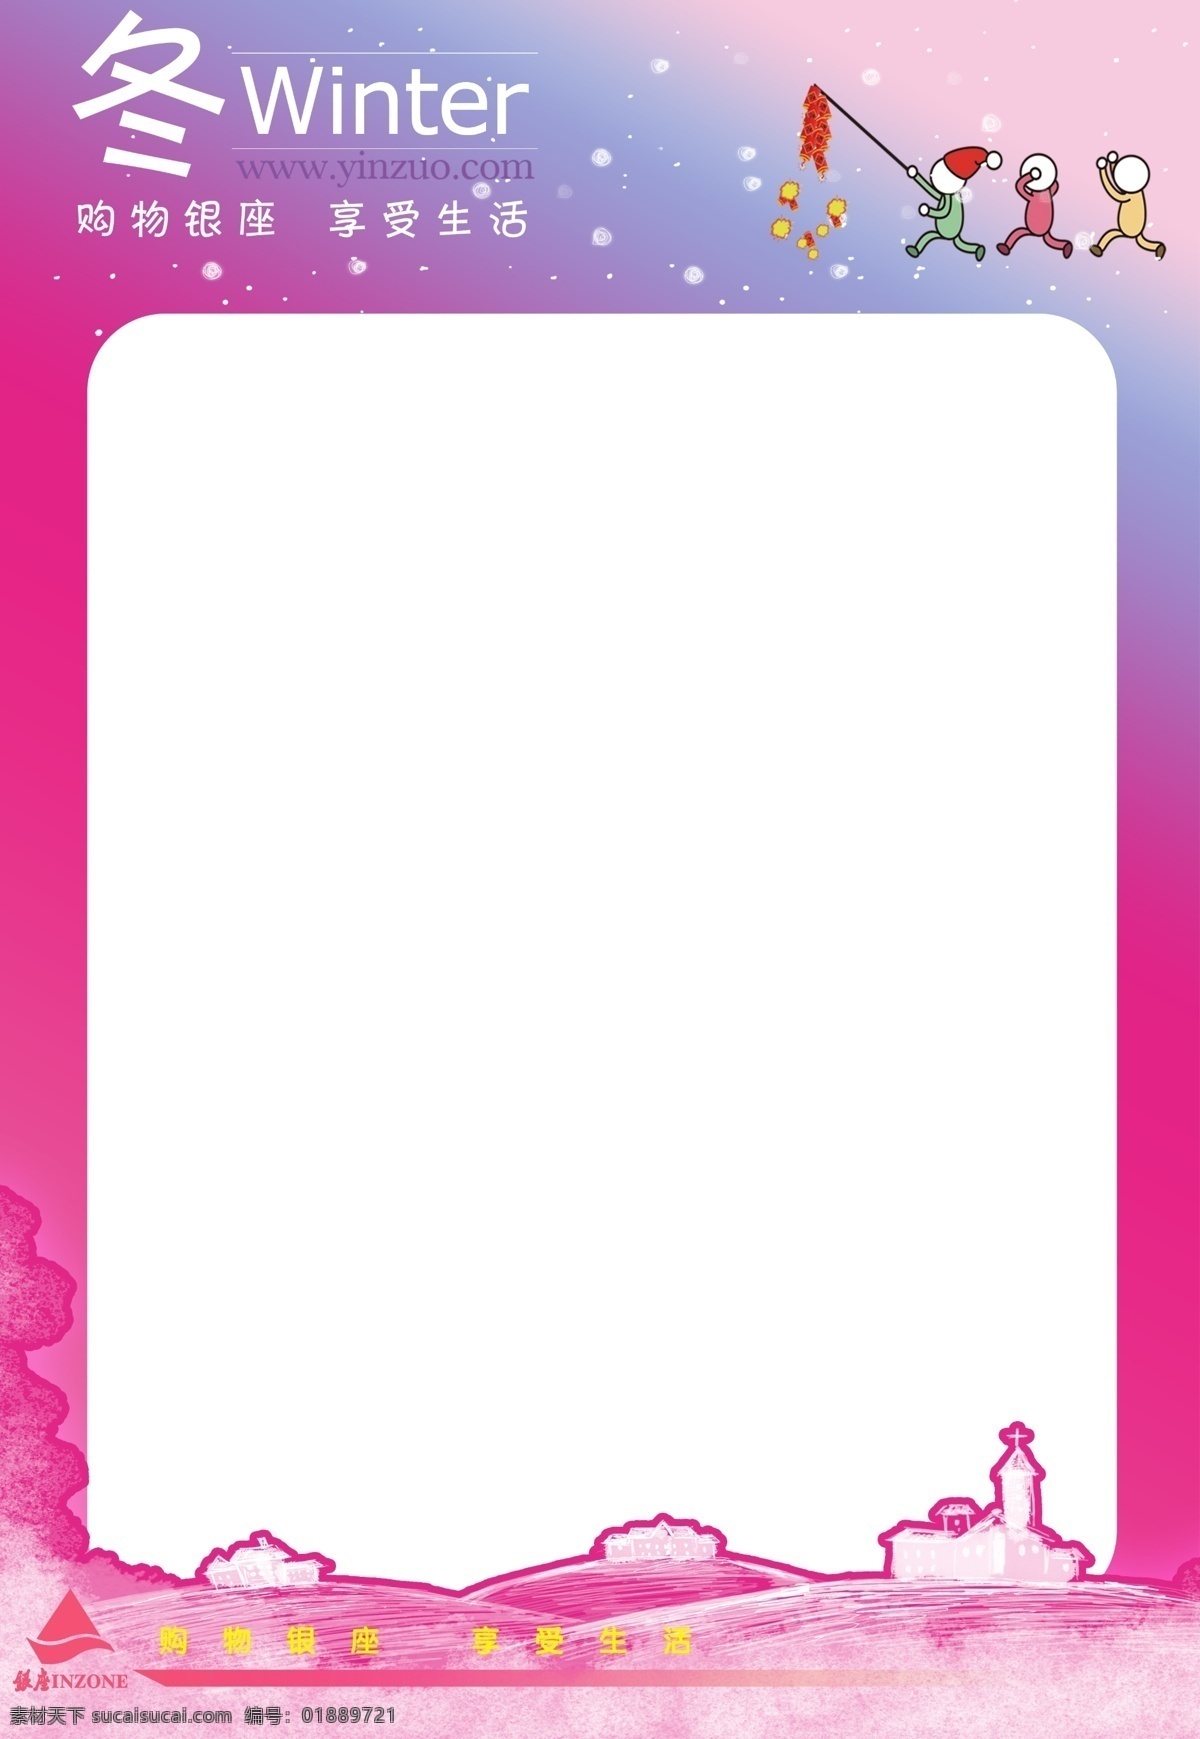 冬季 冬 小孩 银座标志 艺术字 粉红色背景 小山坡 房子 促销海报 宣传单 分层 源文件